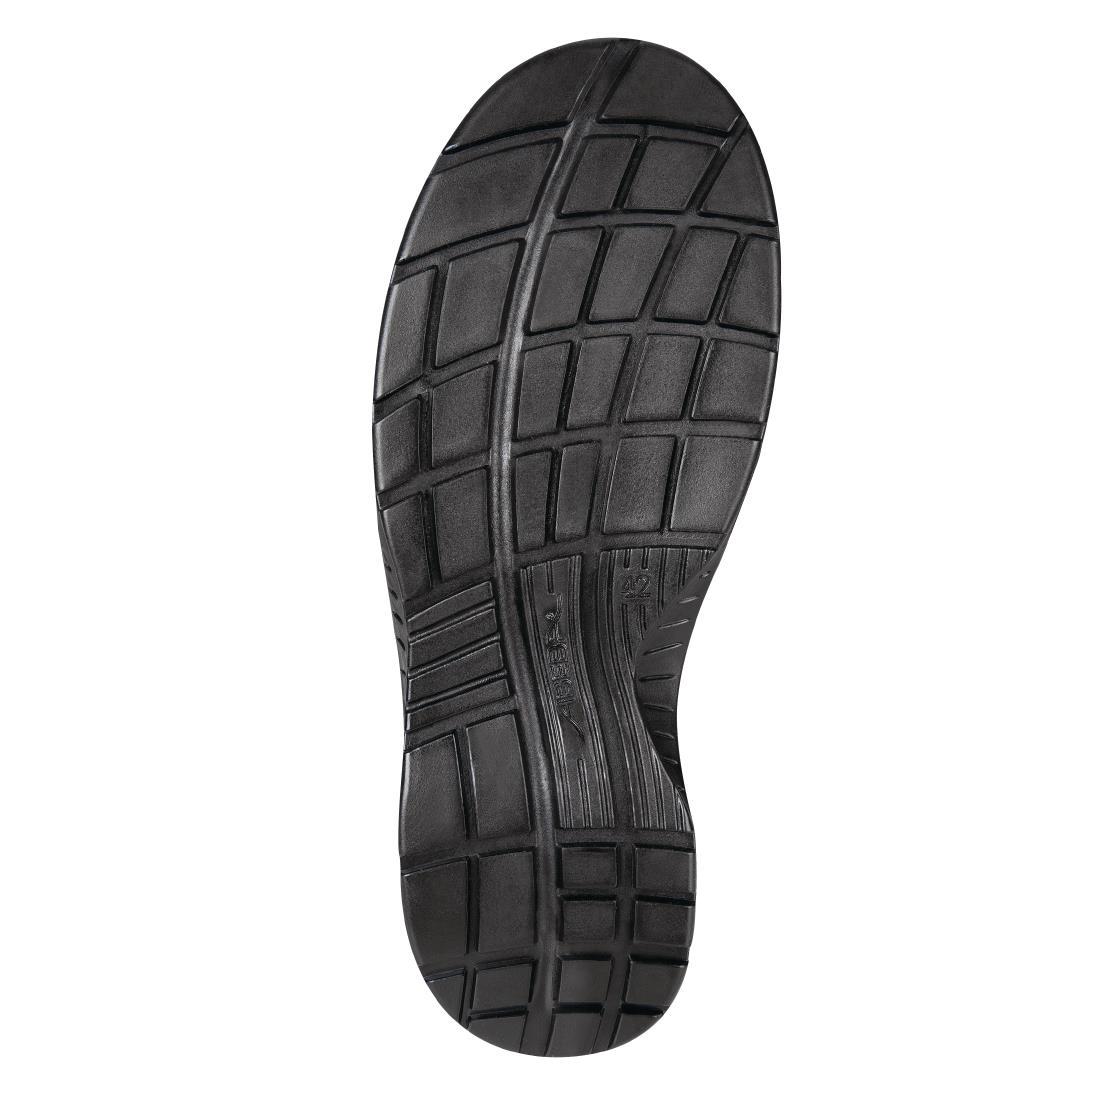 Abeba X-Light Microfiber Lace Up Safety Shoe Black 45